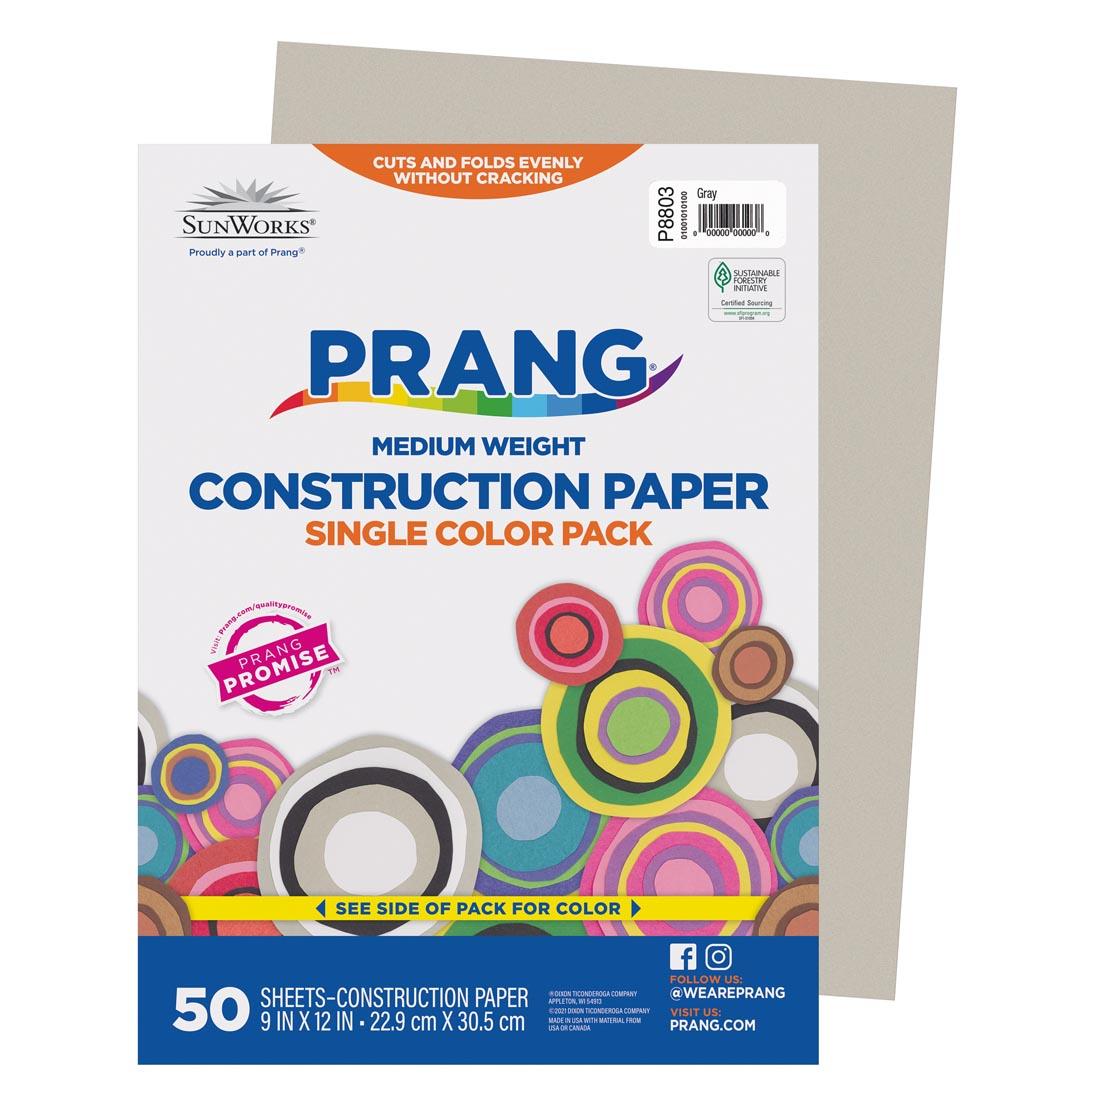 Gray Prang/Sunworks Construction Paper